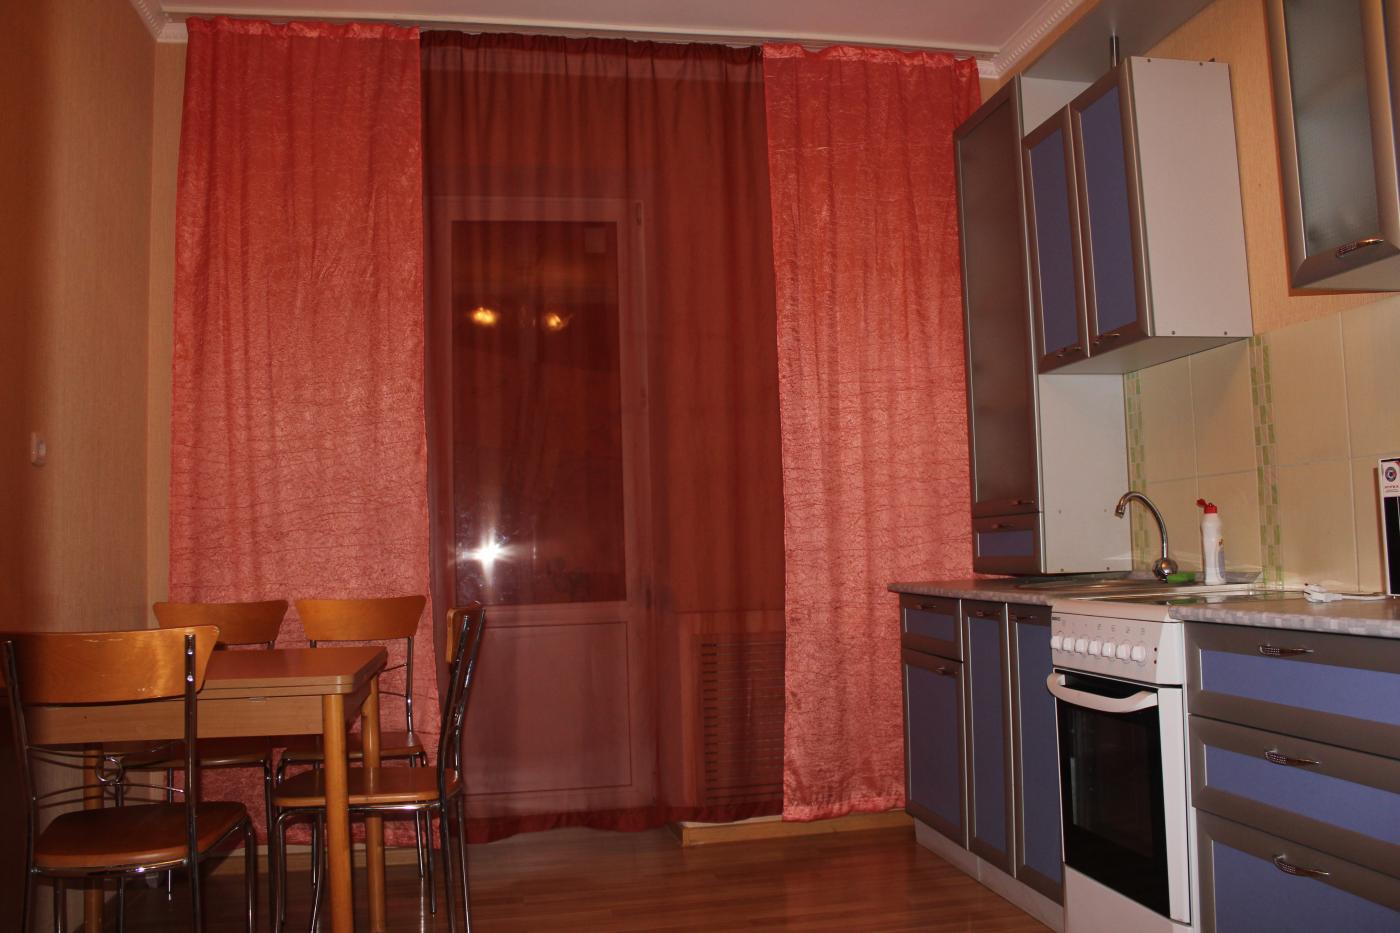 1-комнатная квартира посуточно (вариант № 4362), ул. Чистопольская улица, фото № 7